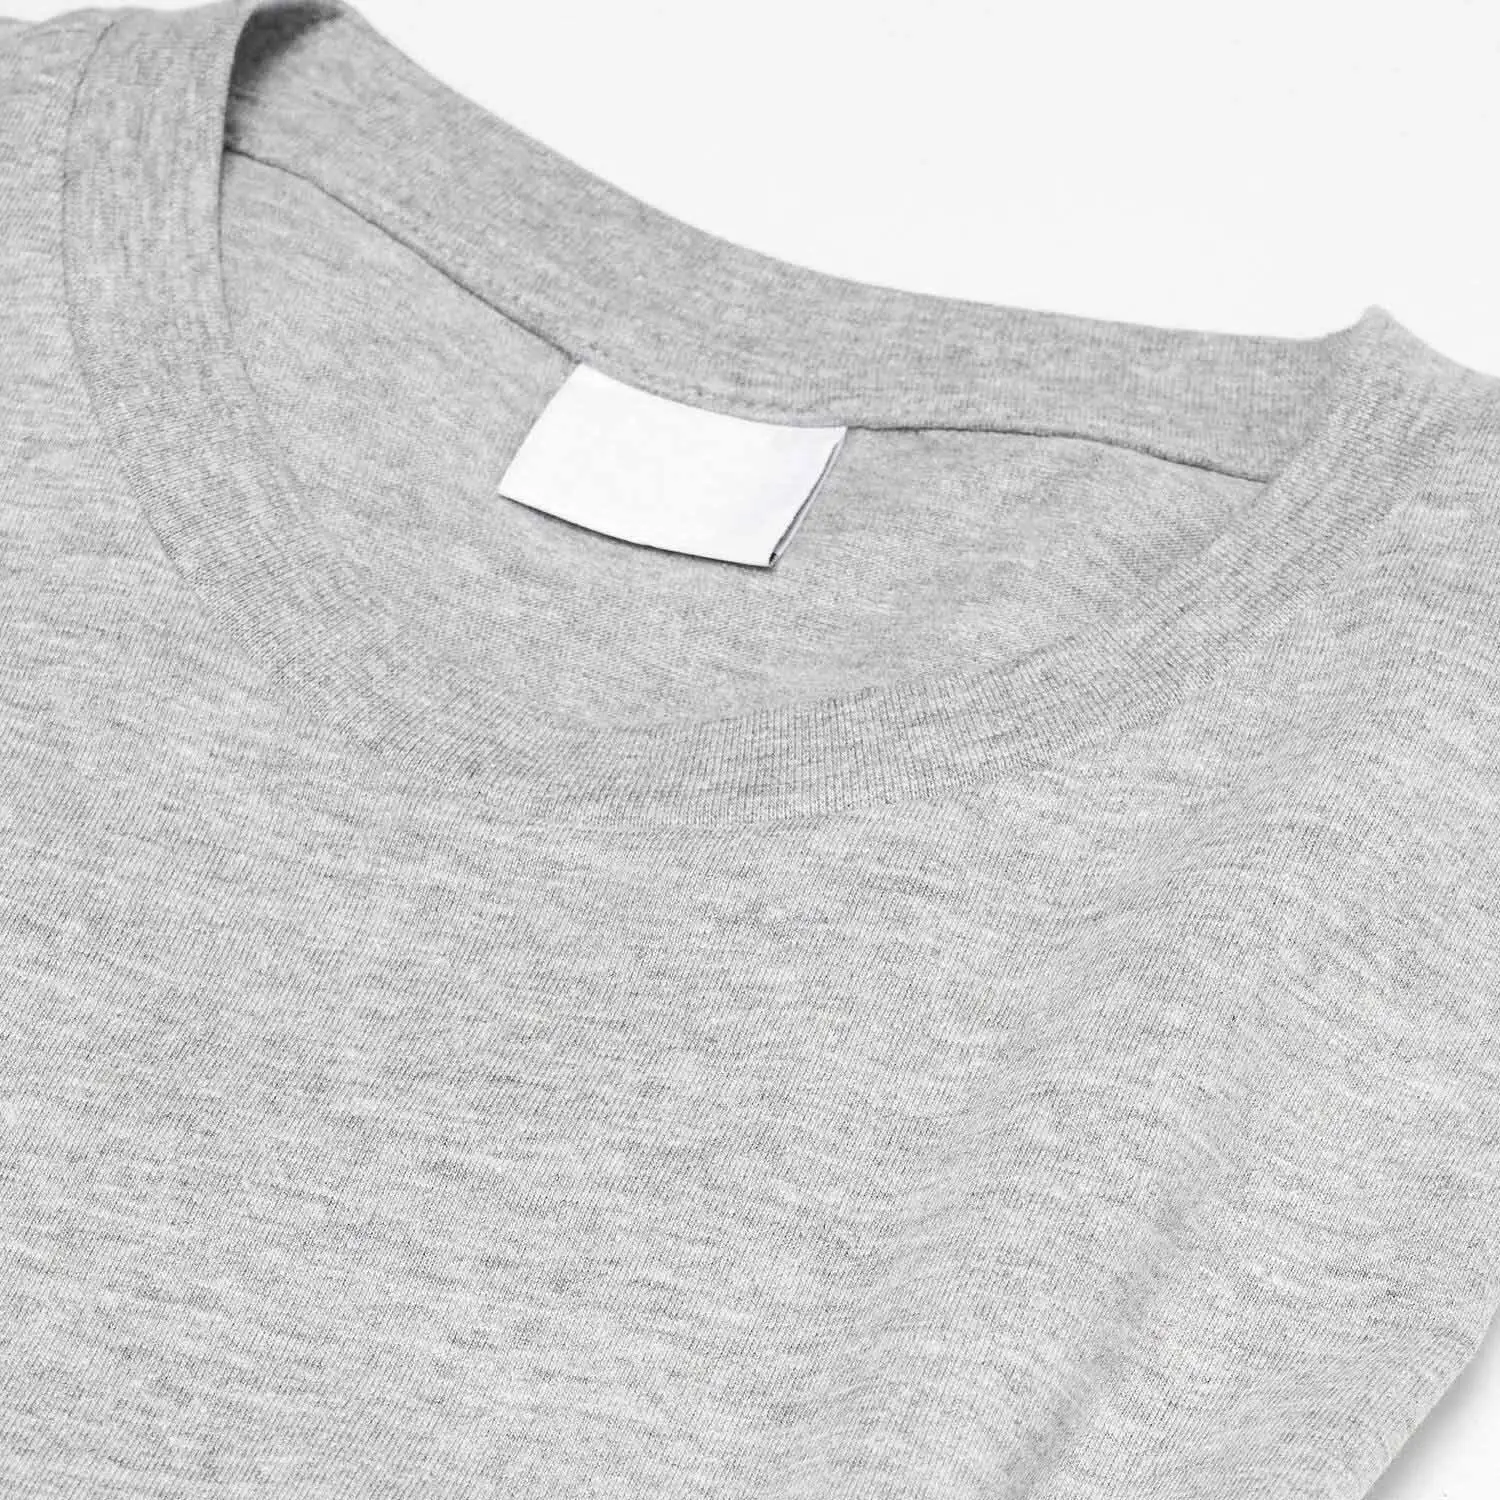 Shirt Latest Hip Hop Heavyweight 100% Cotton Oversized T Shirt Custom 3D Foam Puff Print T Shirts For Men